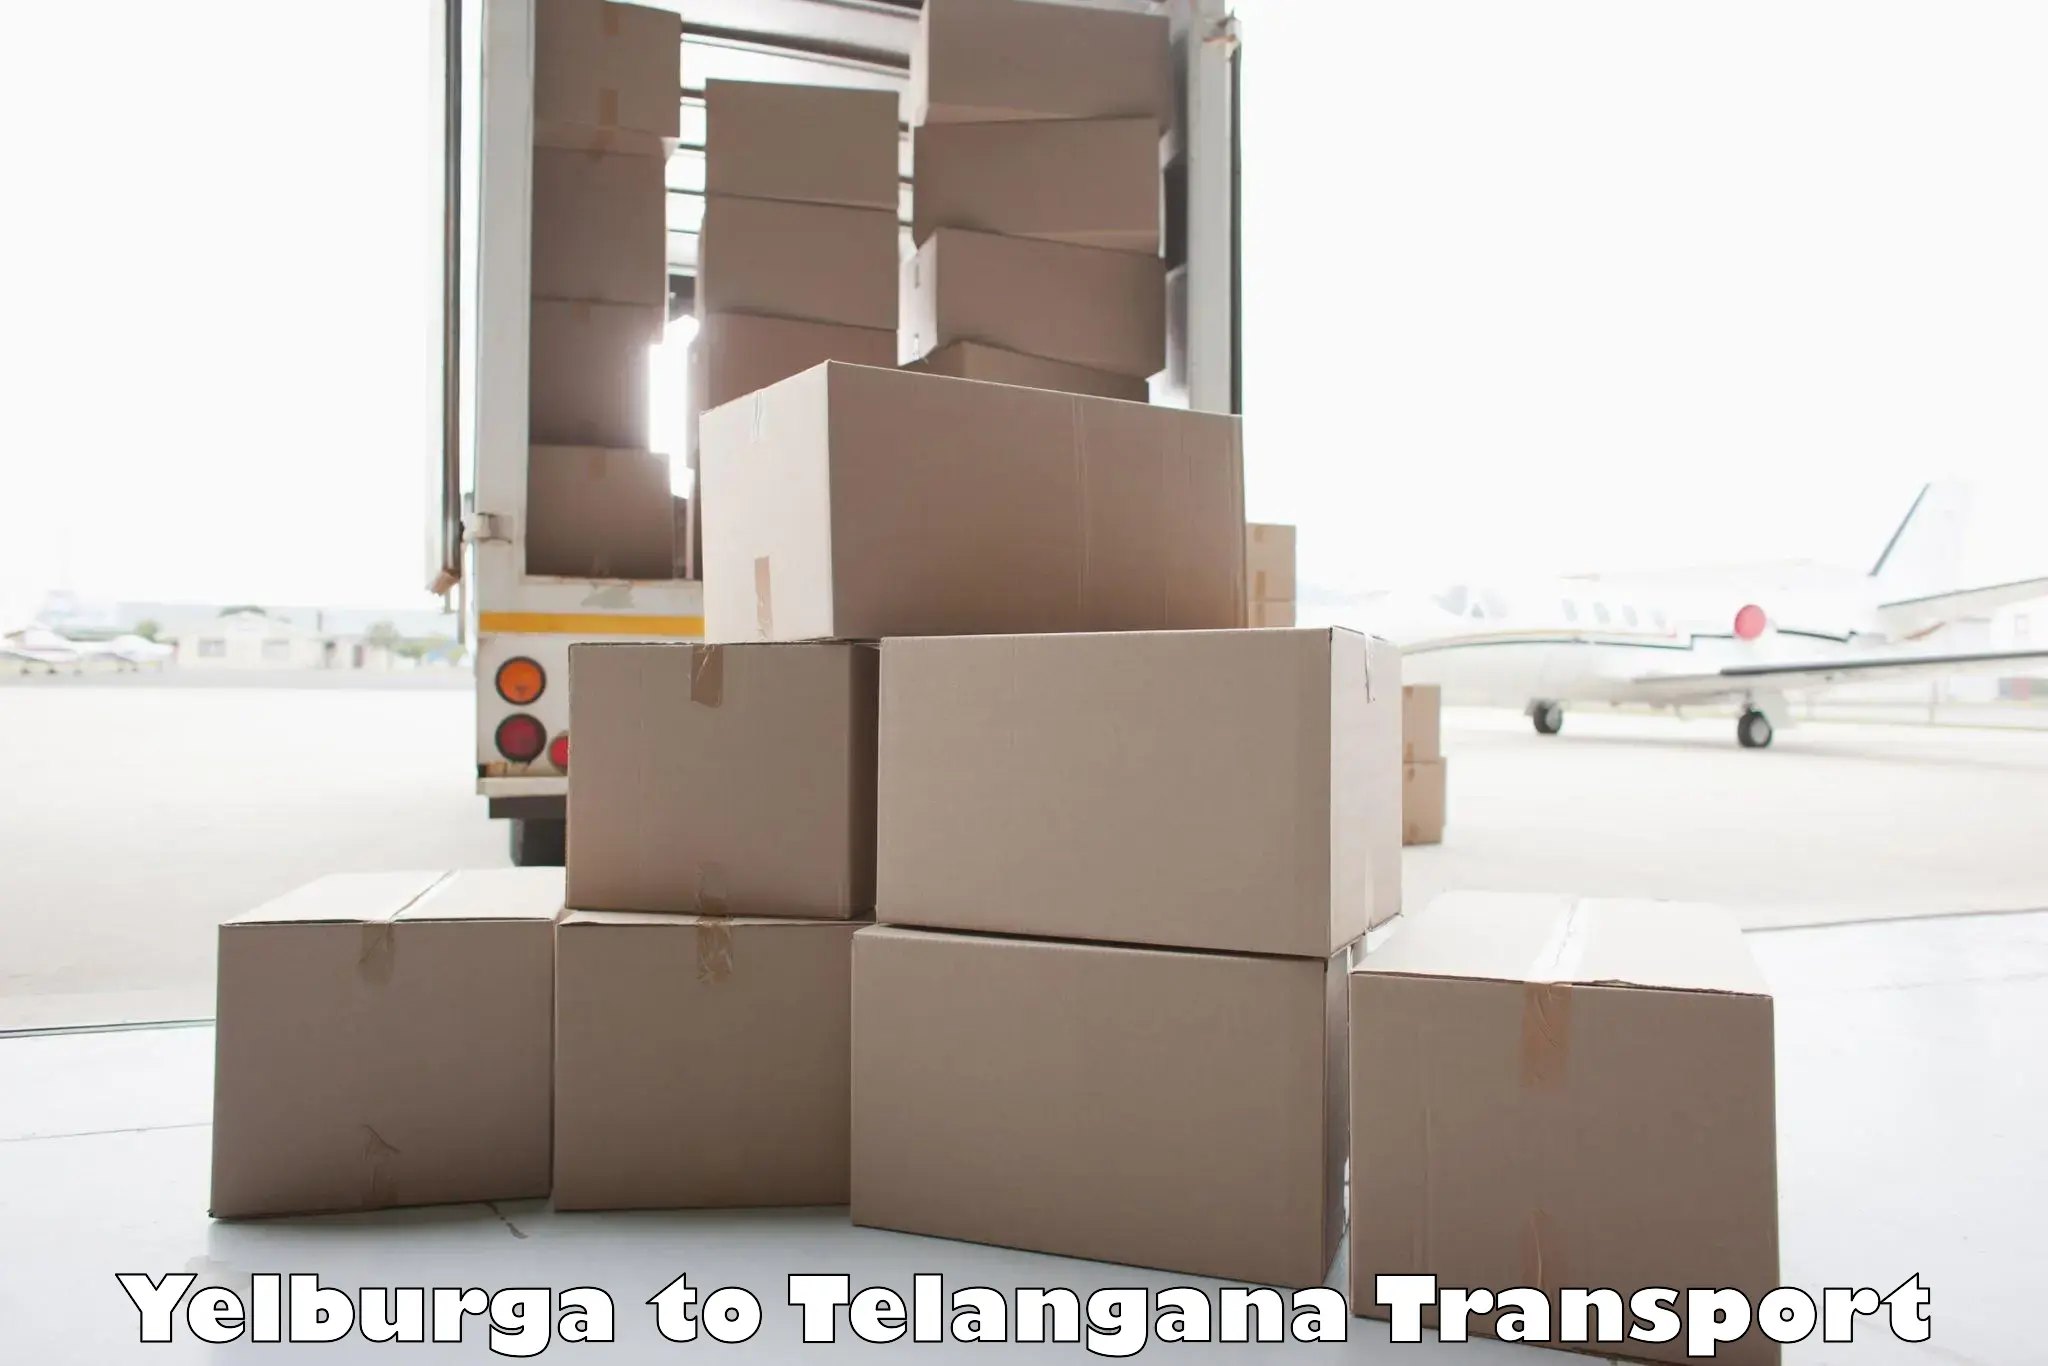 Land transport services Yelburga to Mudigonda